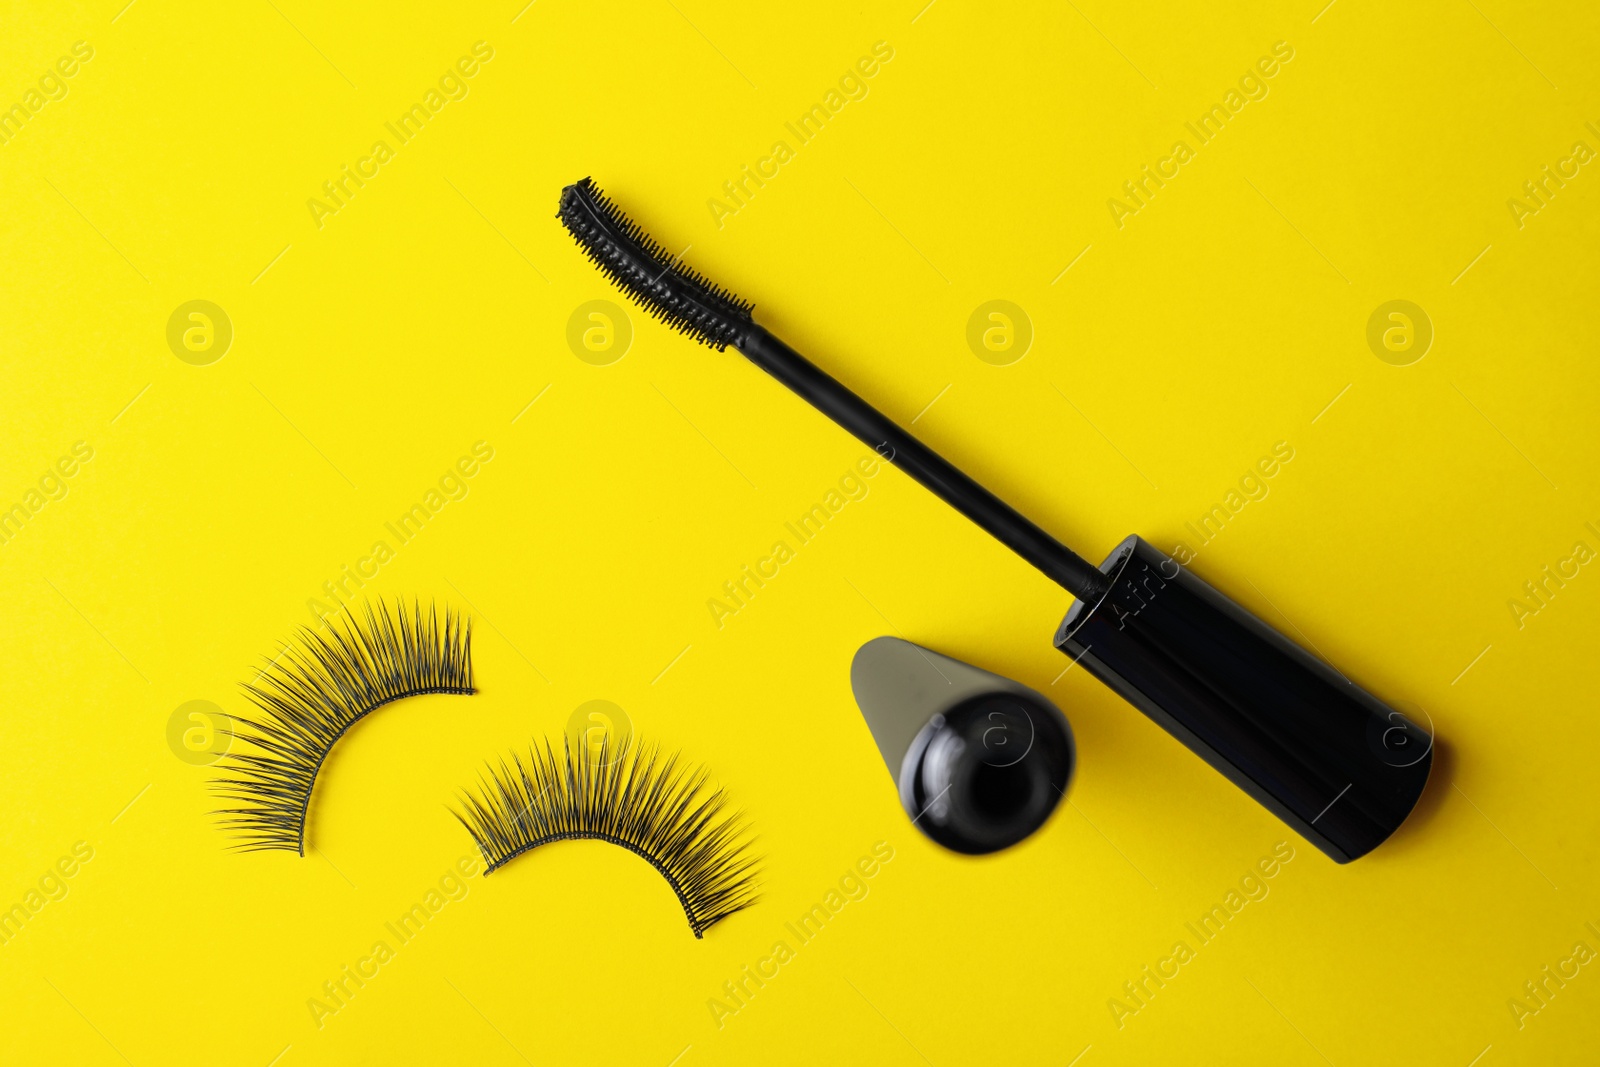 Photo of Black mascara and fake eyelashes on yellow background, flat lay. Makeup product